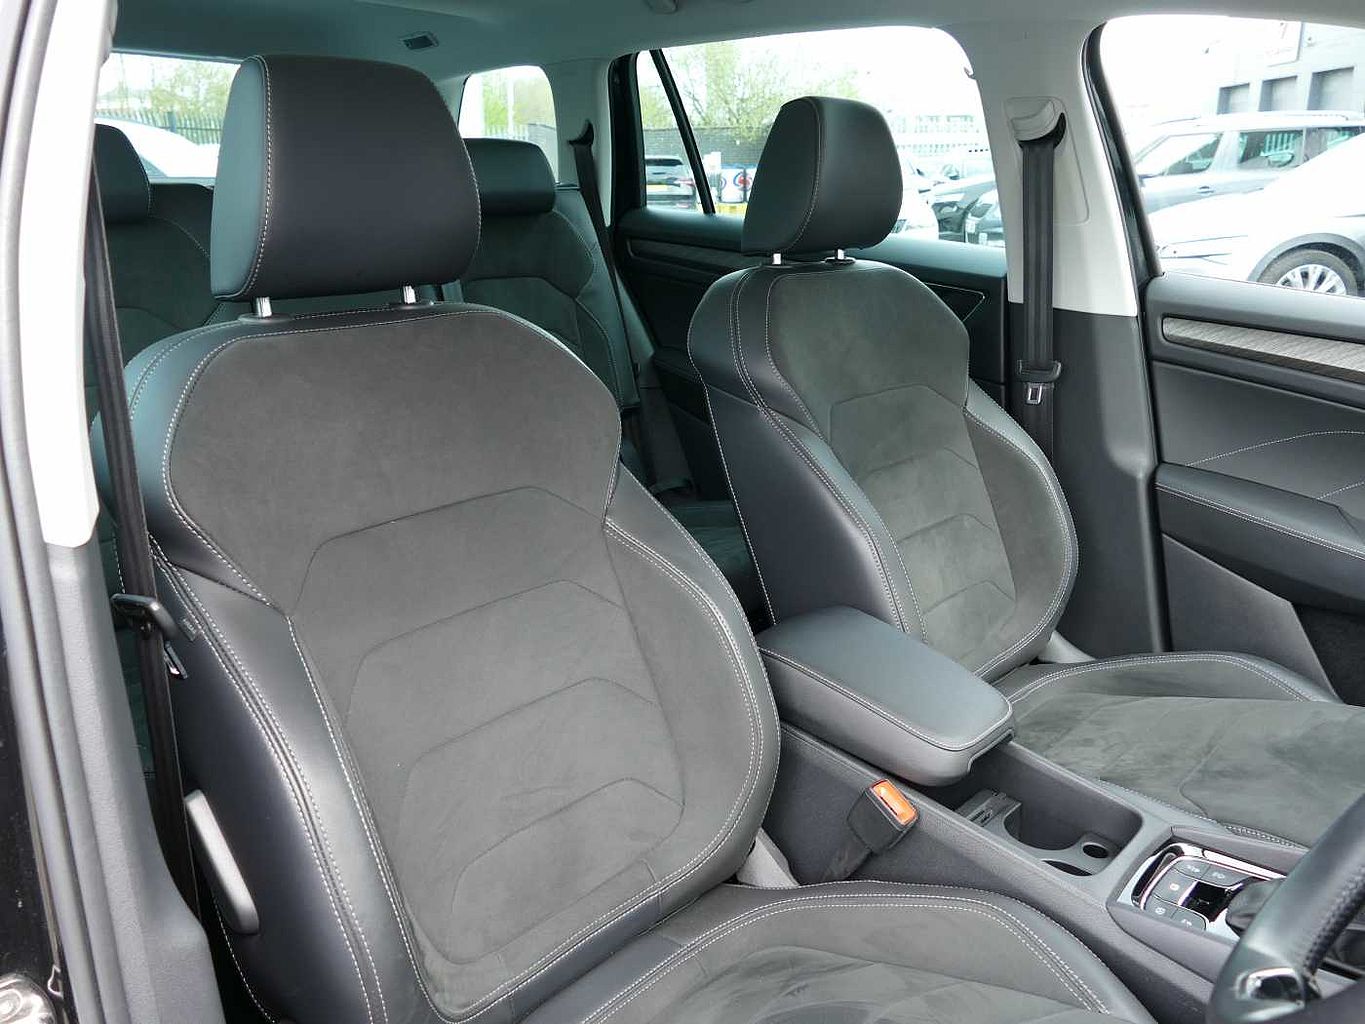 SKODA Kodiaq 2.0 TSI (190ps) 4X4 SE L (7 seats) DSG SUV